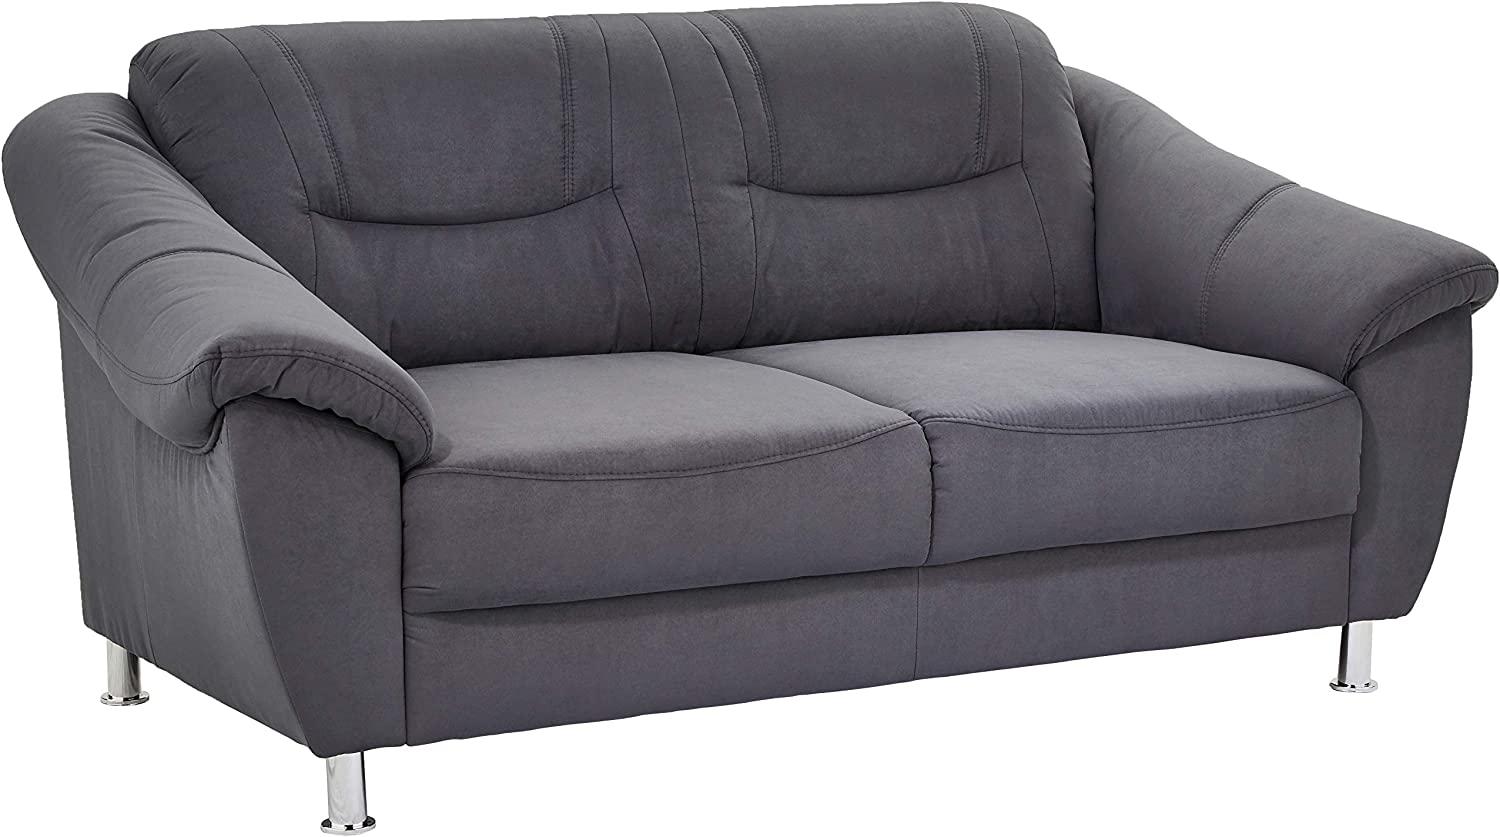 Cavadore 2-Sitzer Sofa Salisa, 2er Sofa mit Federkern im klassischen Design, 182 x 86 x 90, mikrofaser grau Bild 1